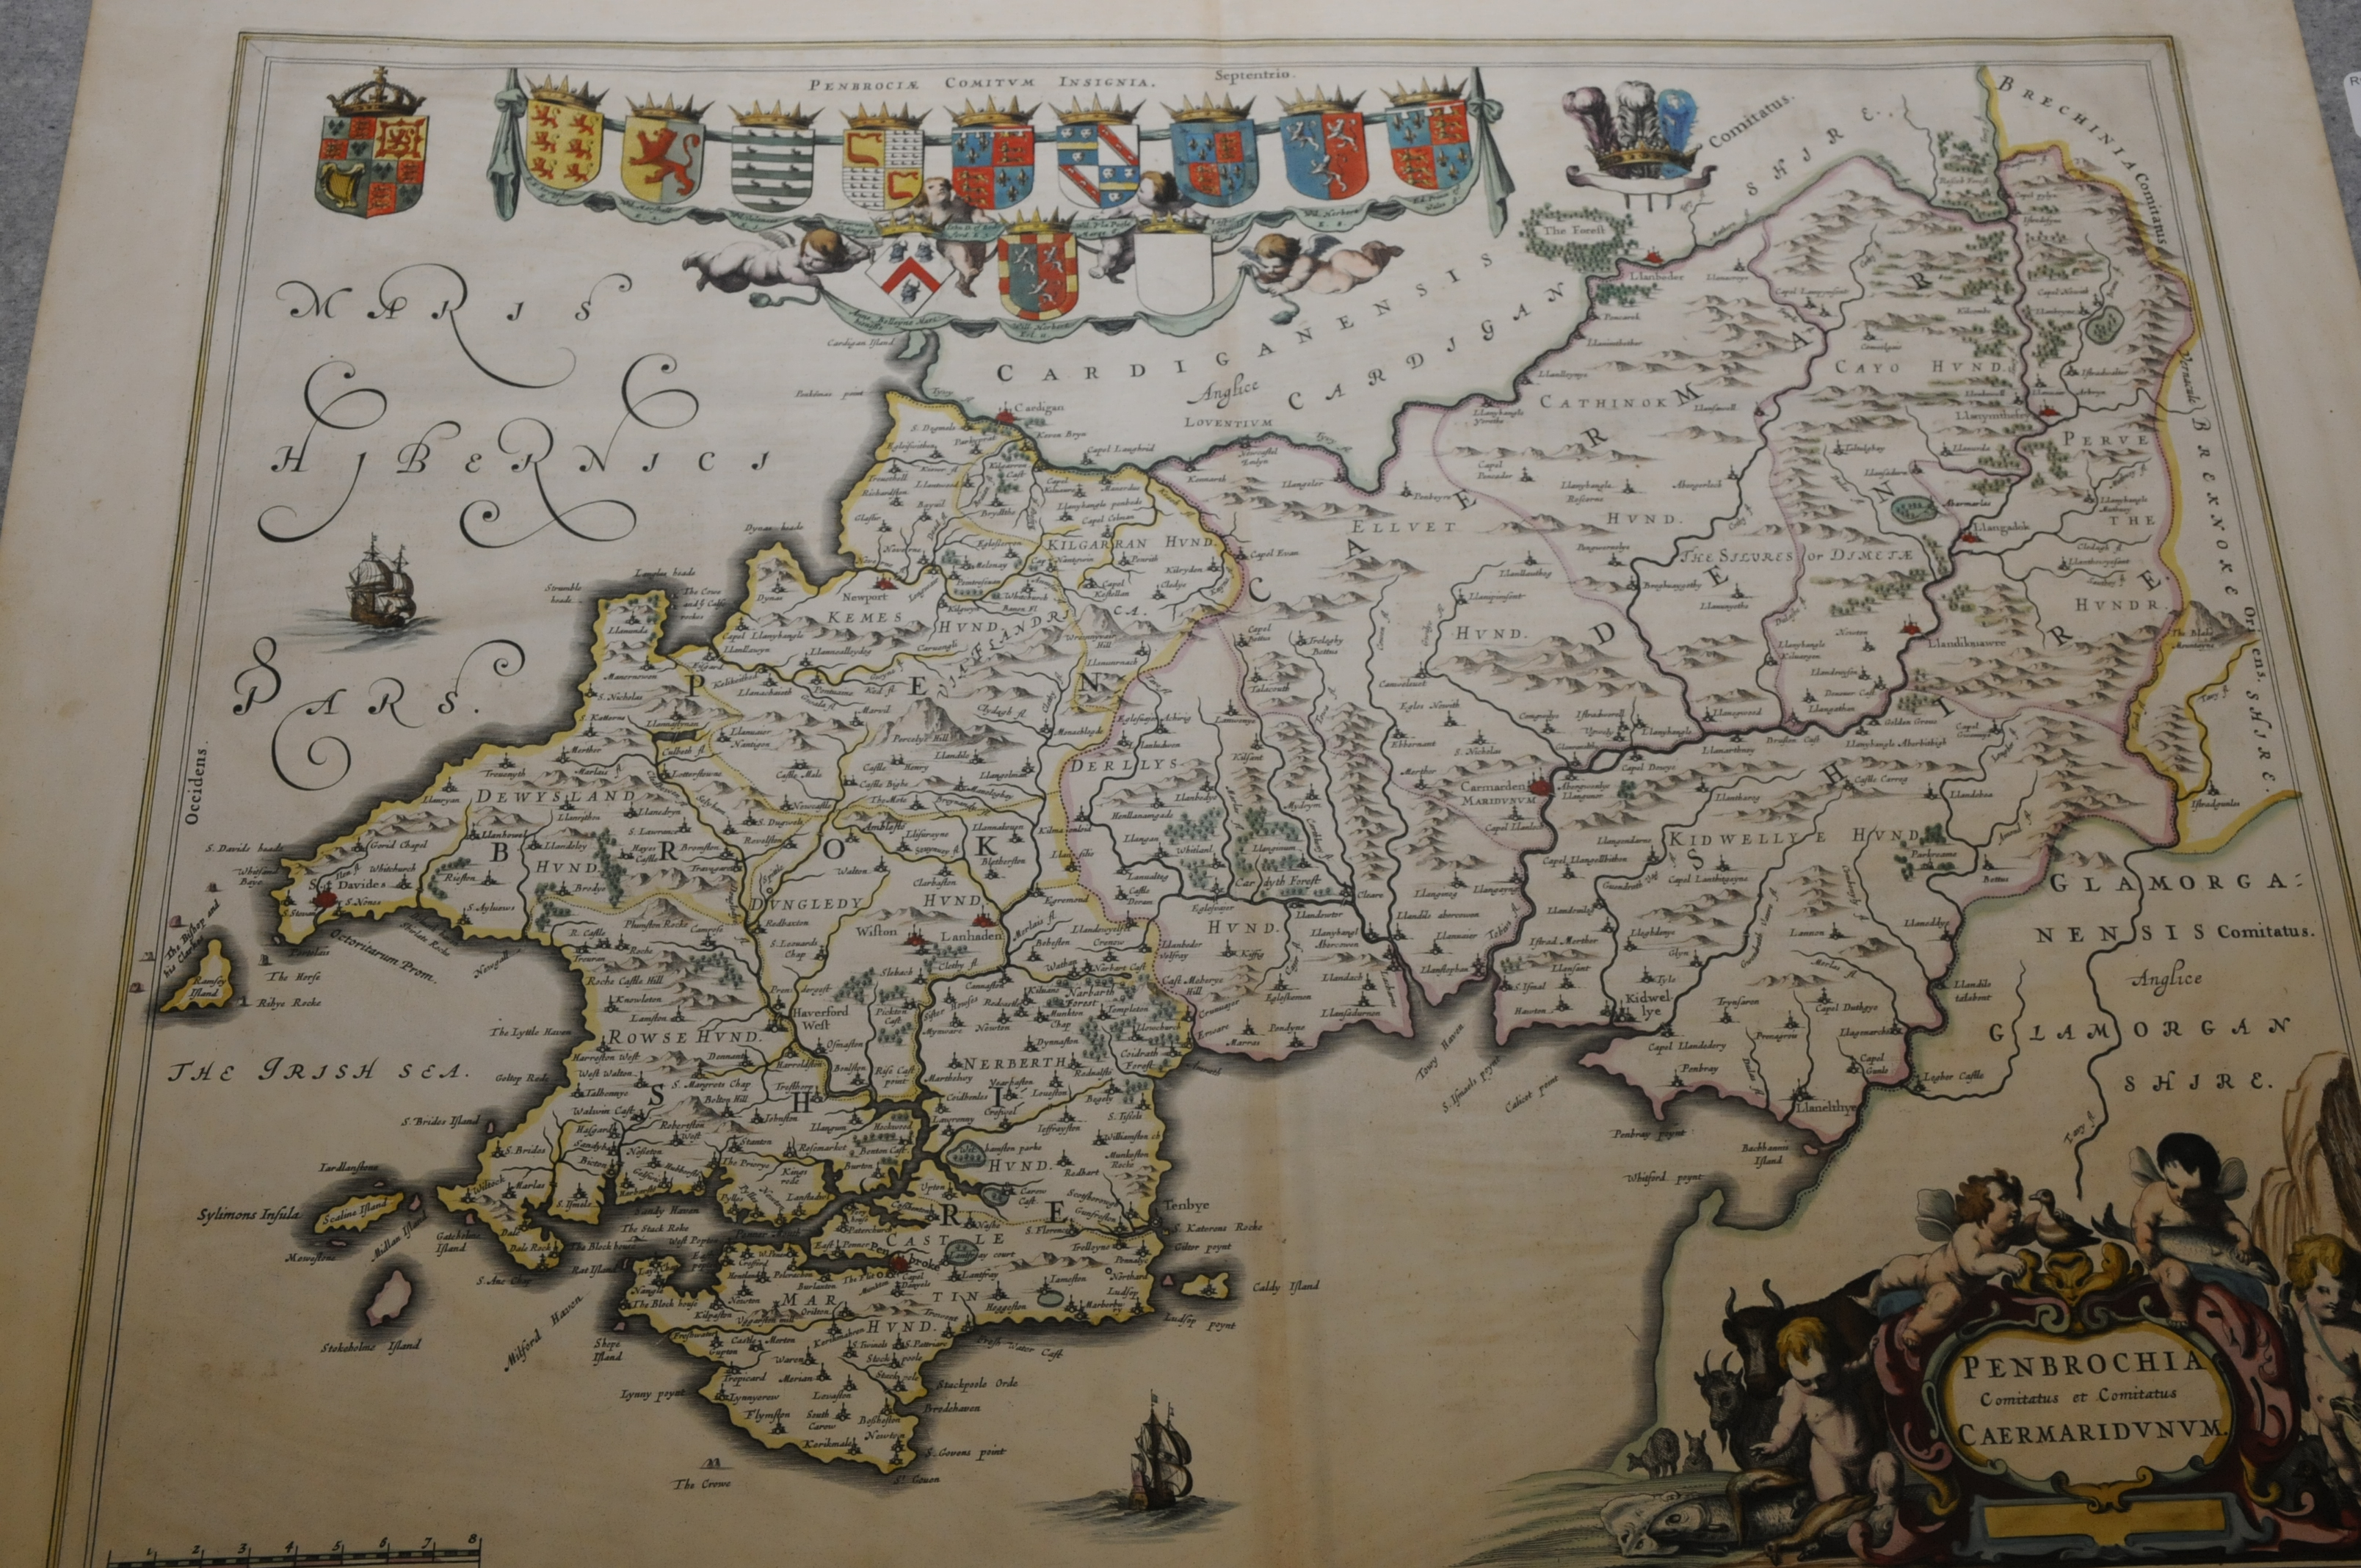 Coloured Pembroke circa 1645 map by Bleau (51.